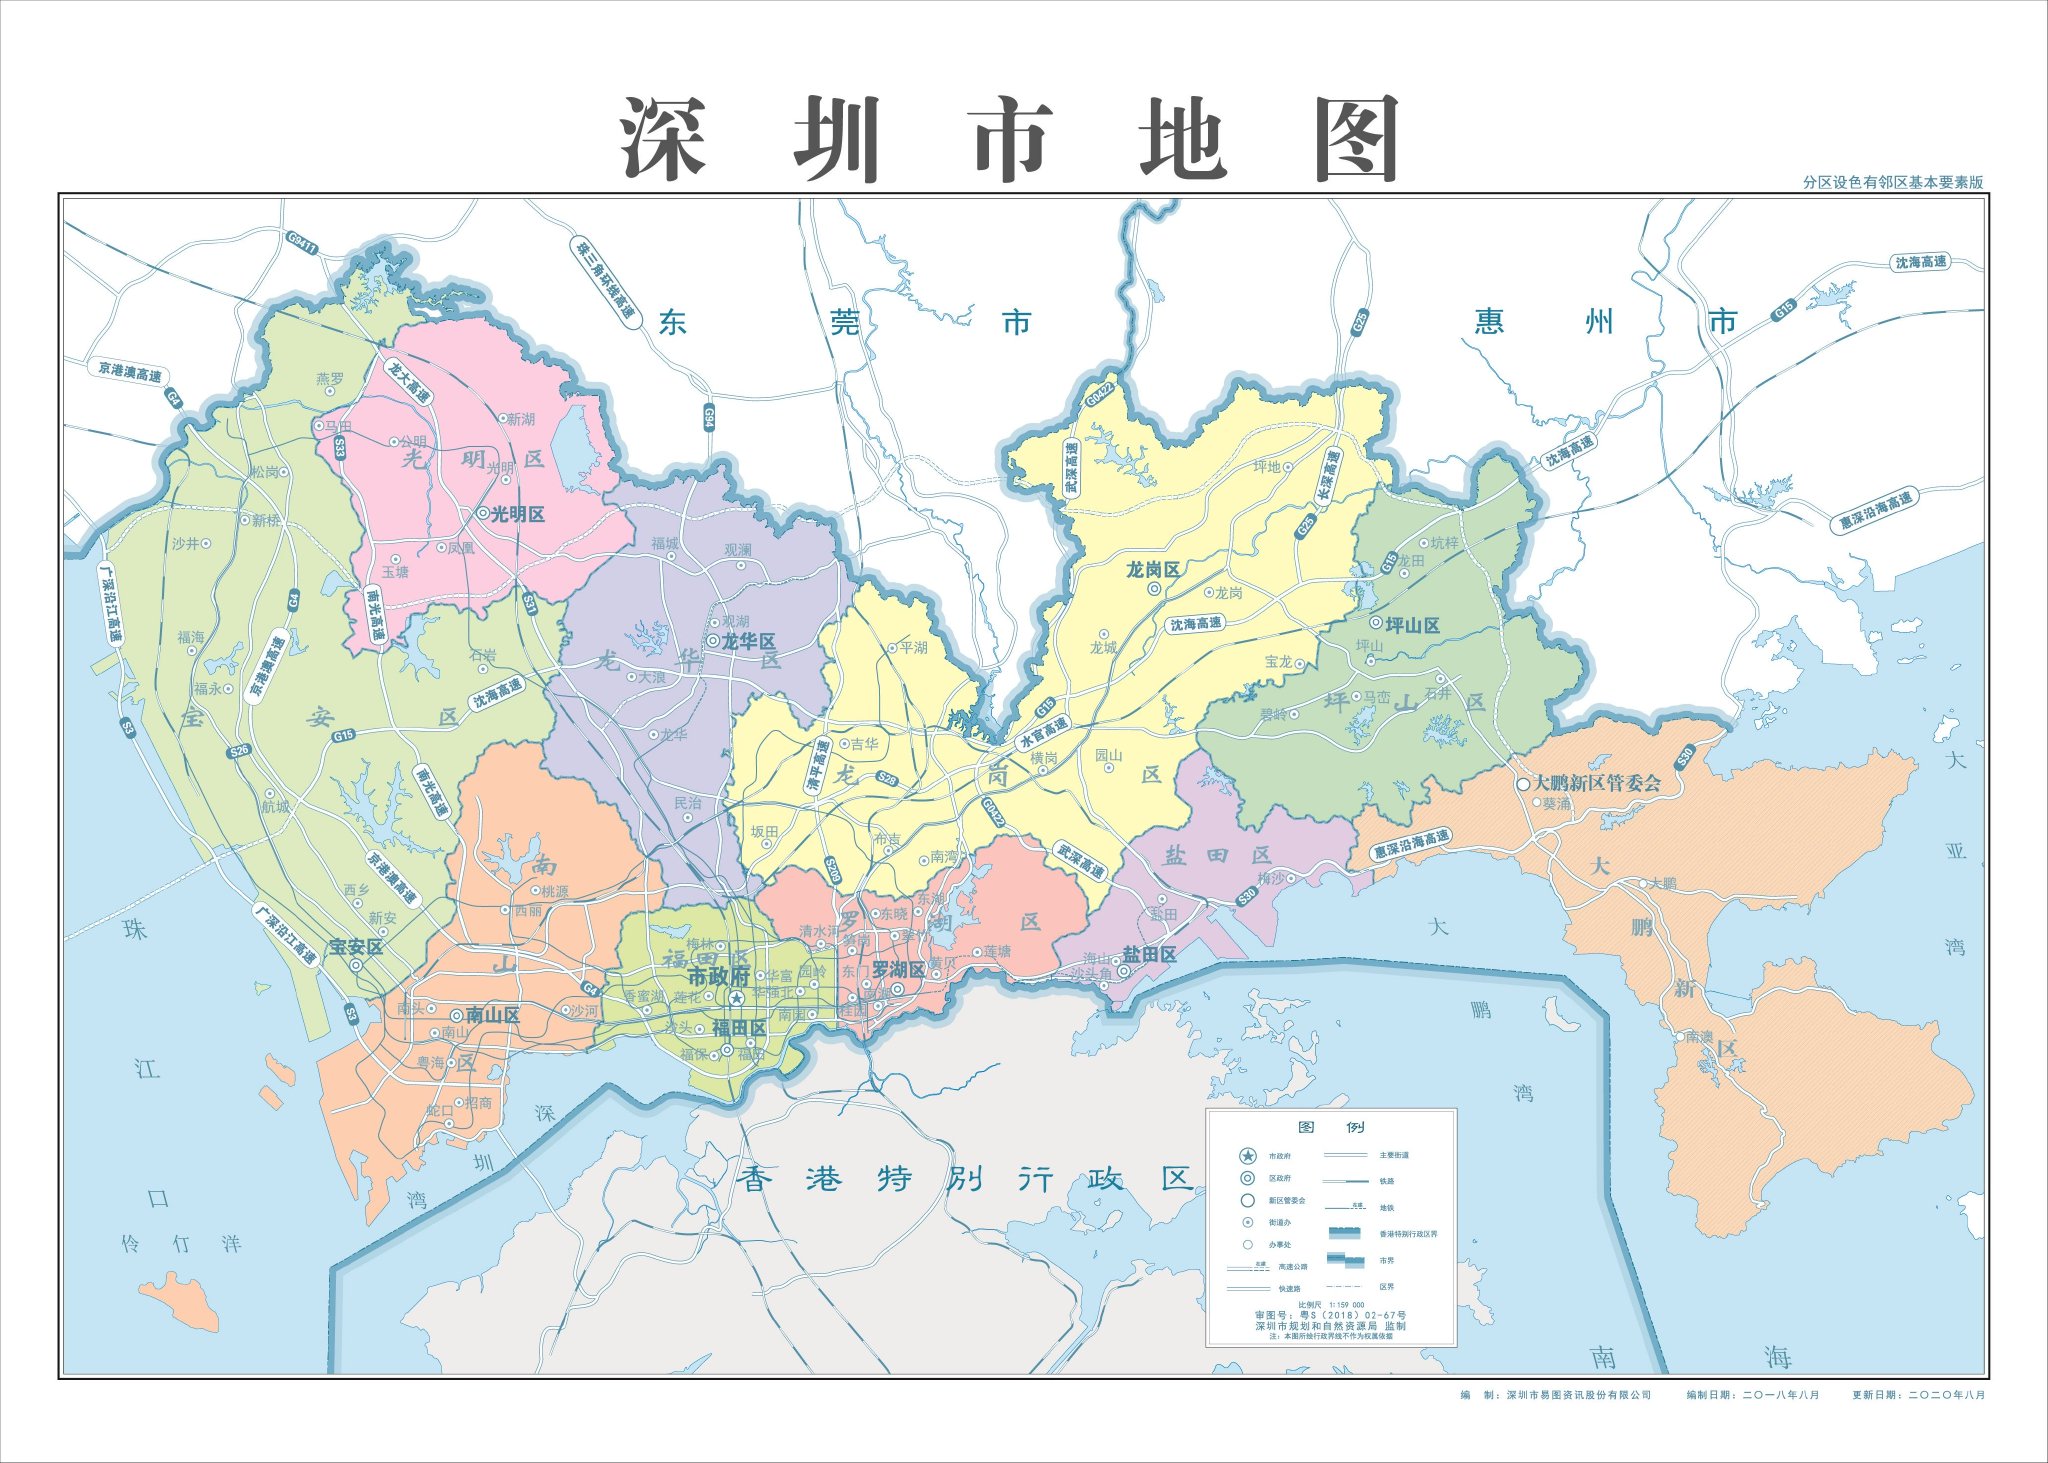 深圳并不像北京等城市有着明显的一环,二环,三环分布你会发现打开地图